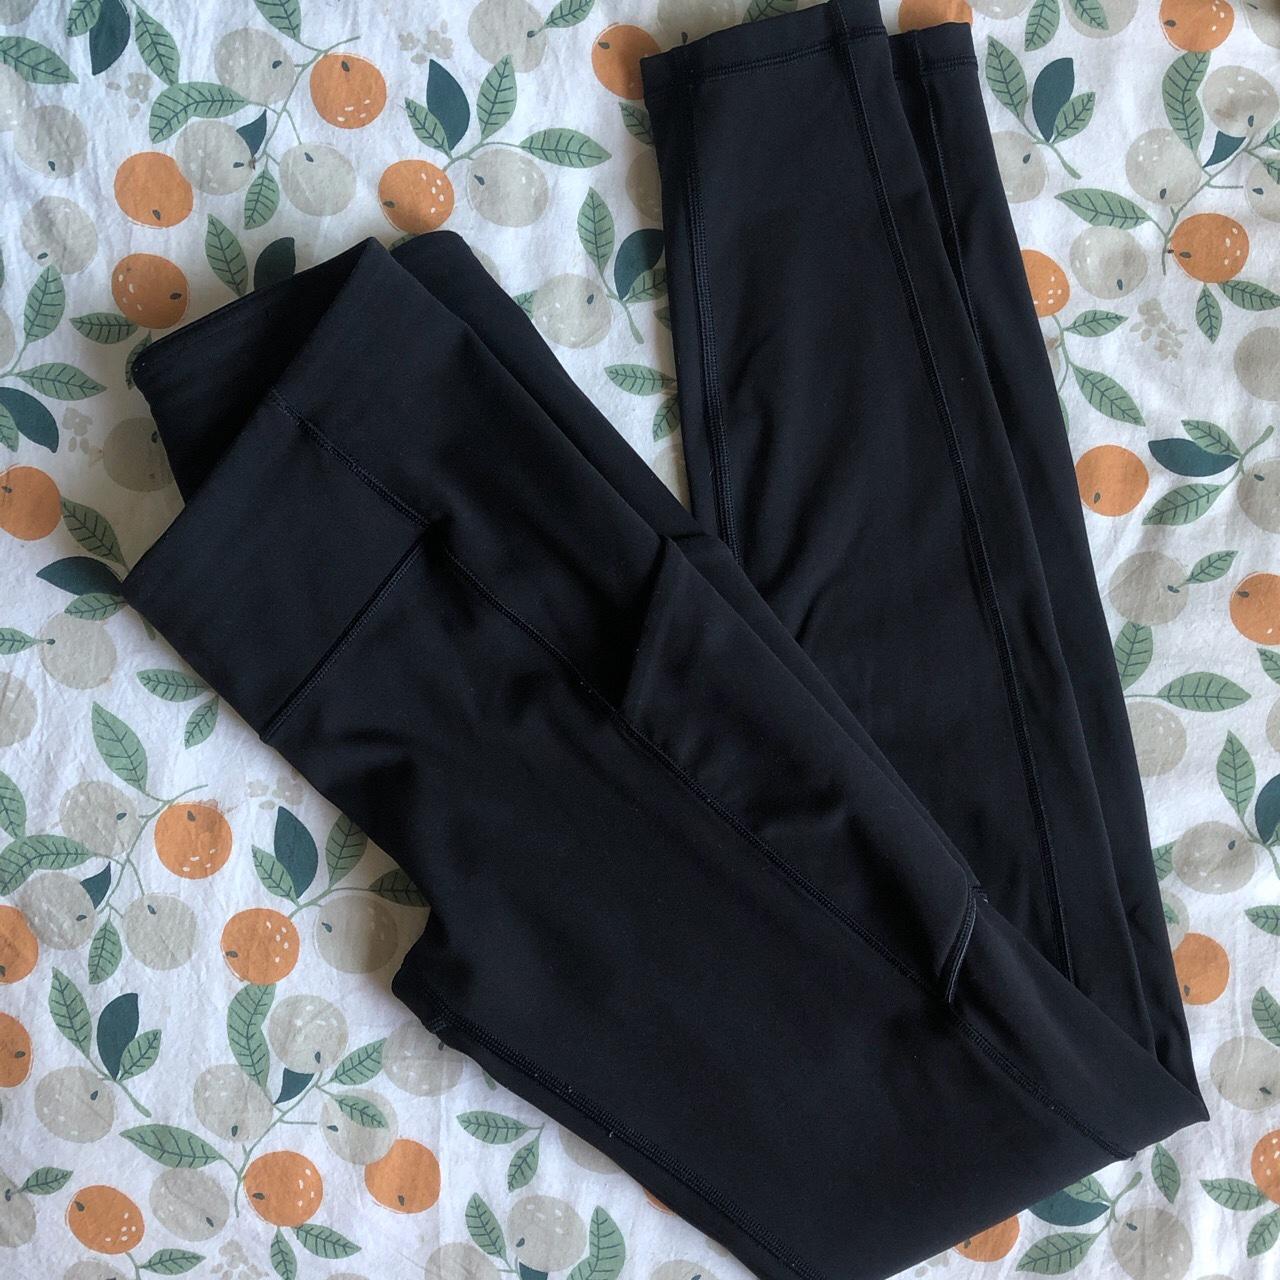 Lululemon black leggings (with pockets✨), size 4, - Depop